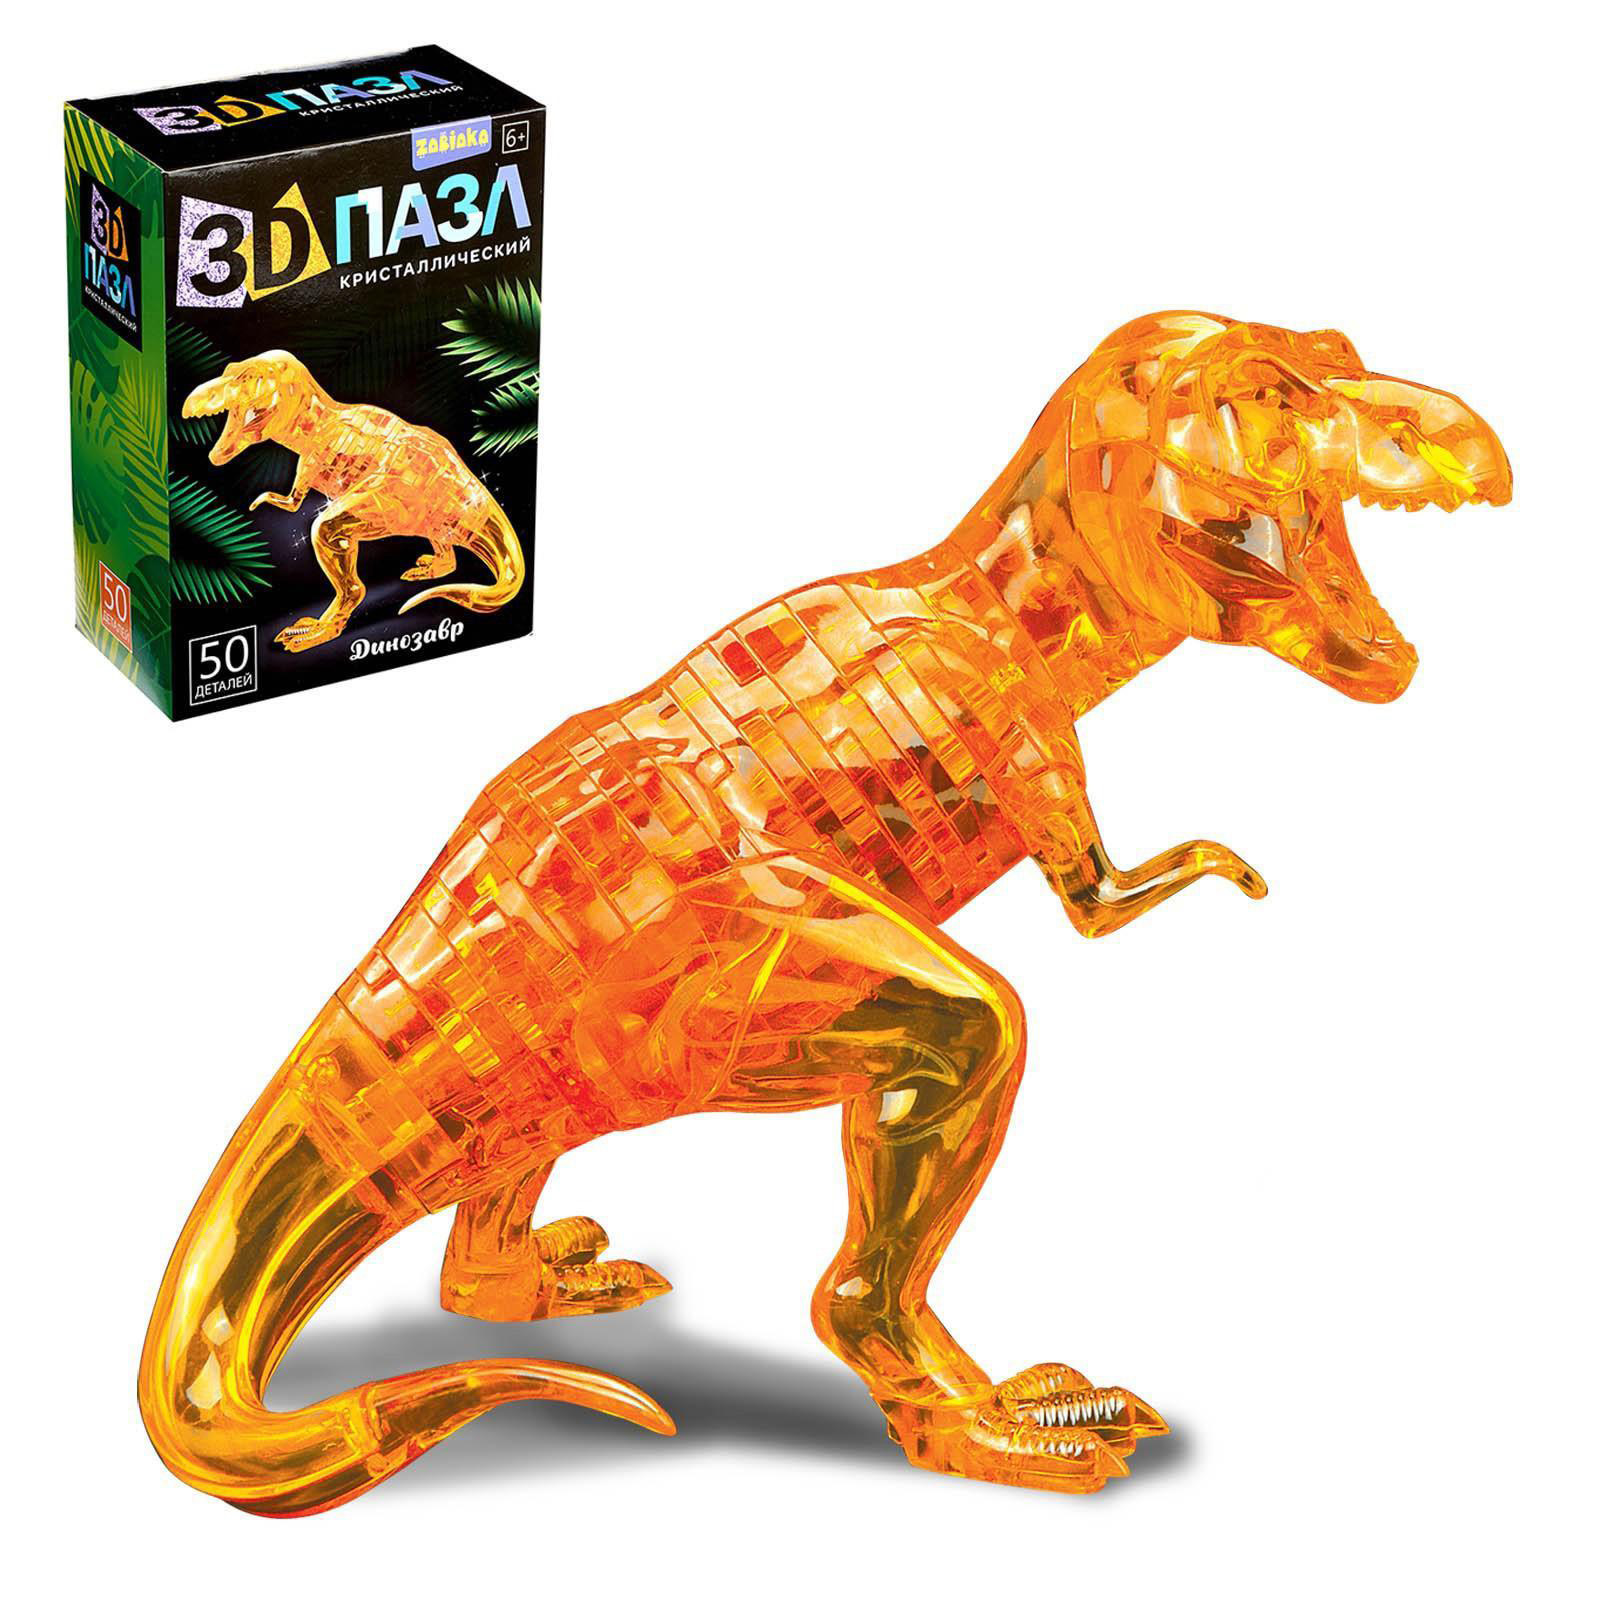 Пазл Забияка 3D кристаллический Динозавр, 50 деталей в ассортименте 1025229